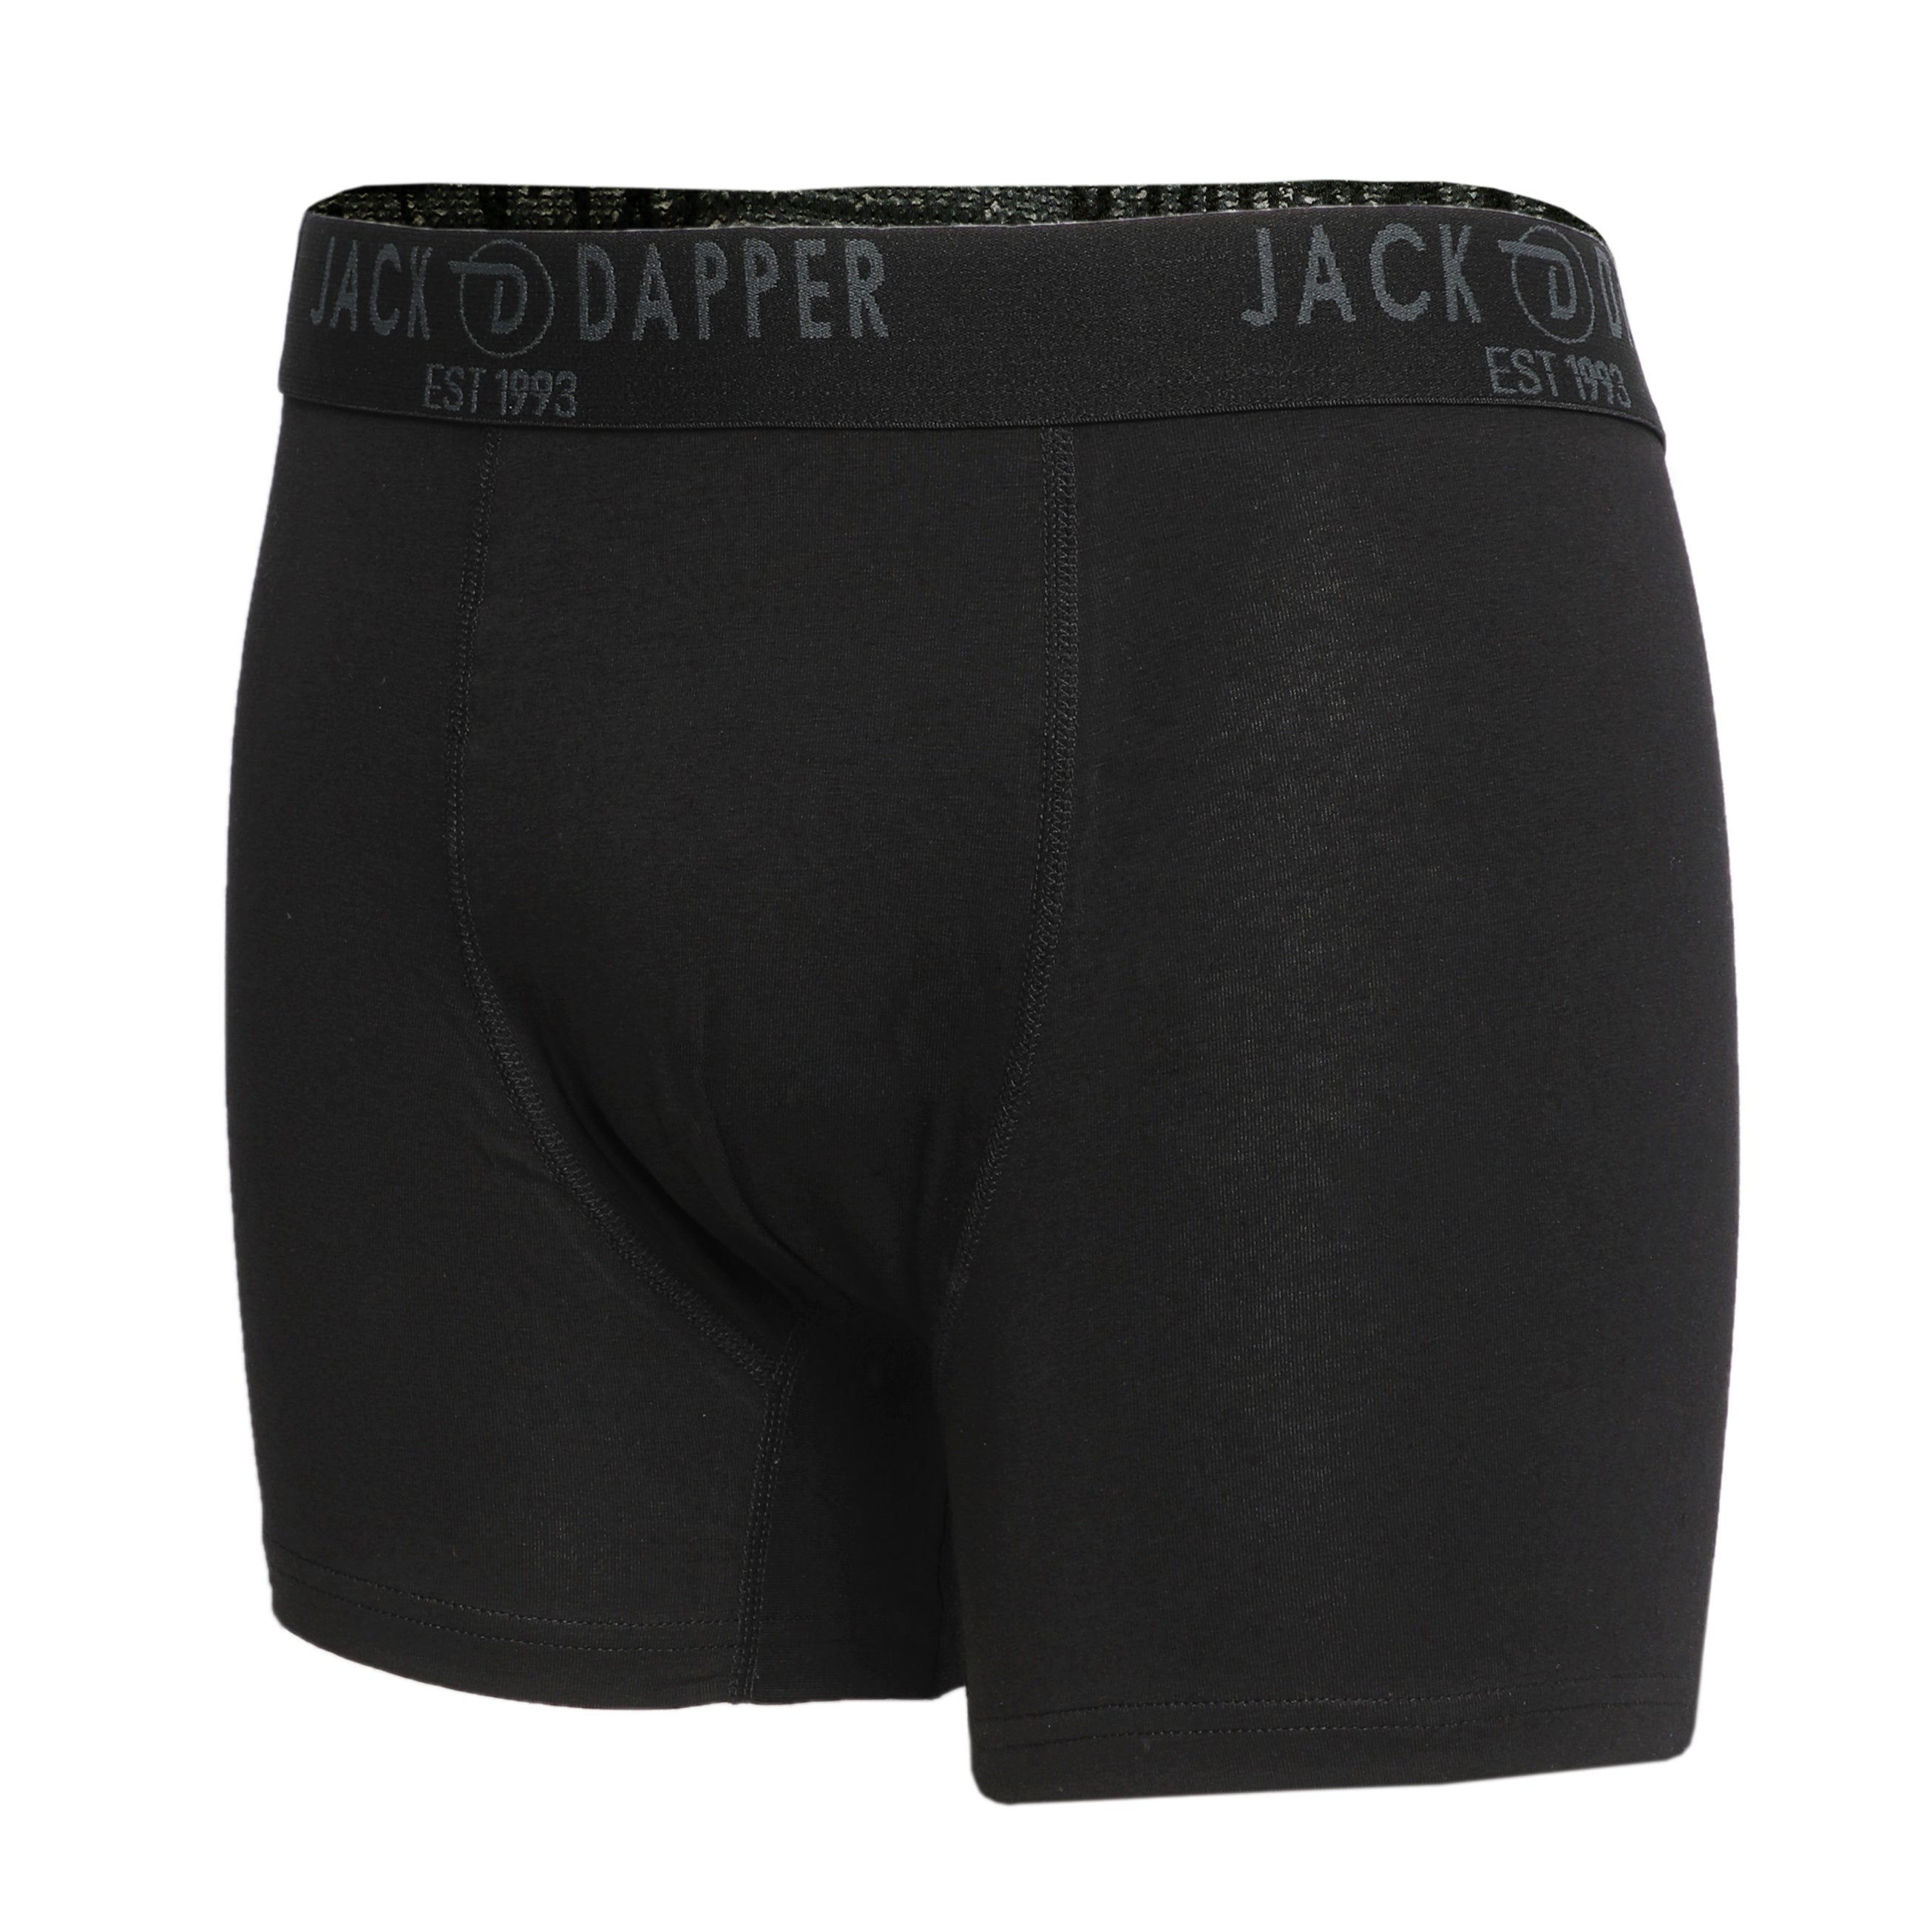 Jack Dapper Black 2-Piece Cotton Underwear